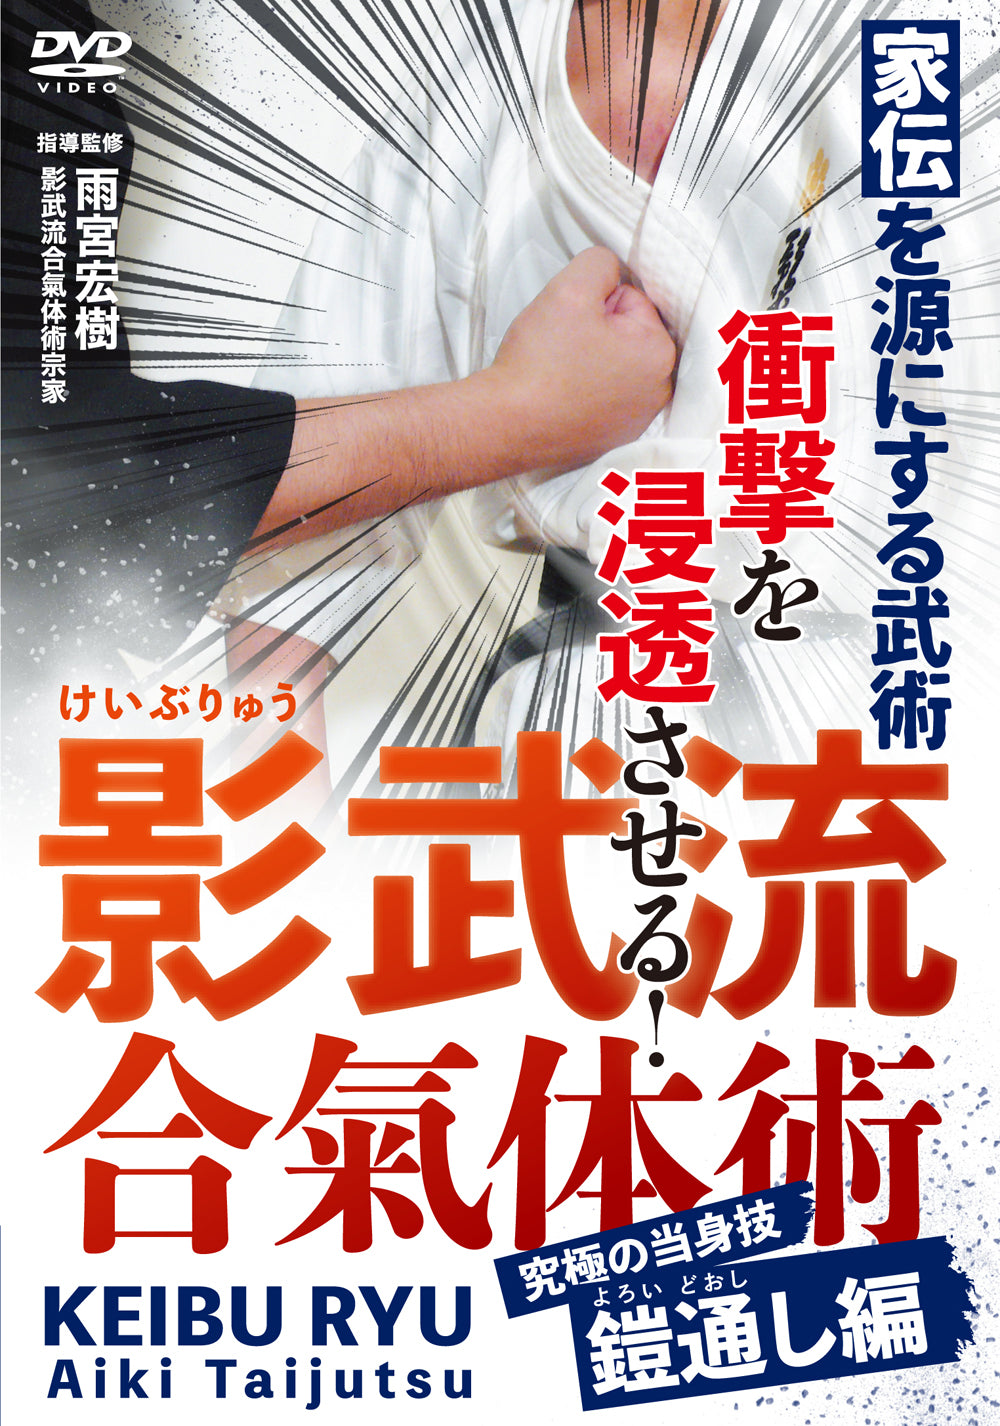 Keibu Ryu Aiki Taijutsu DVD by Yusuke Yachi